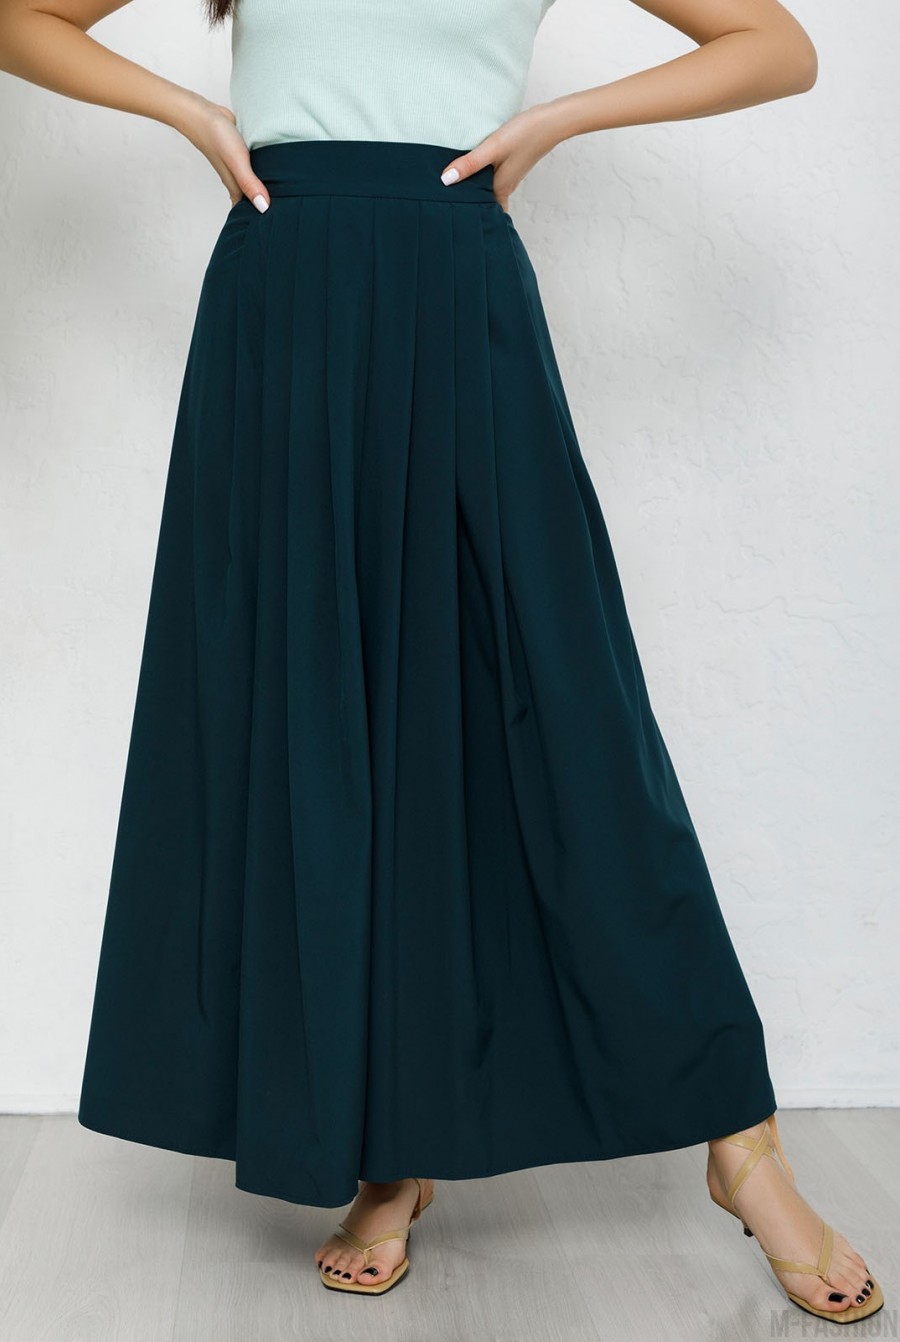 Зеленая длинная расклешенная юбка - Фото 1